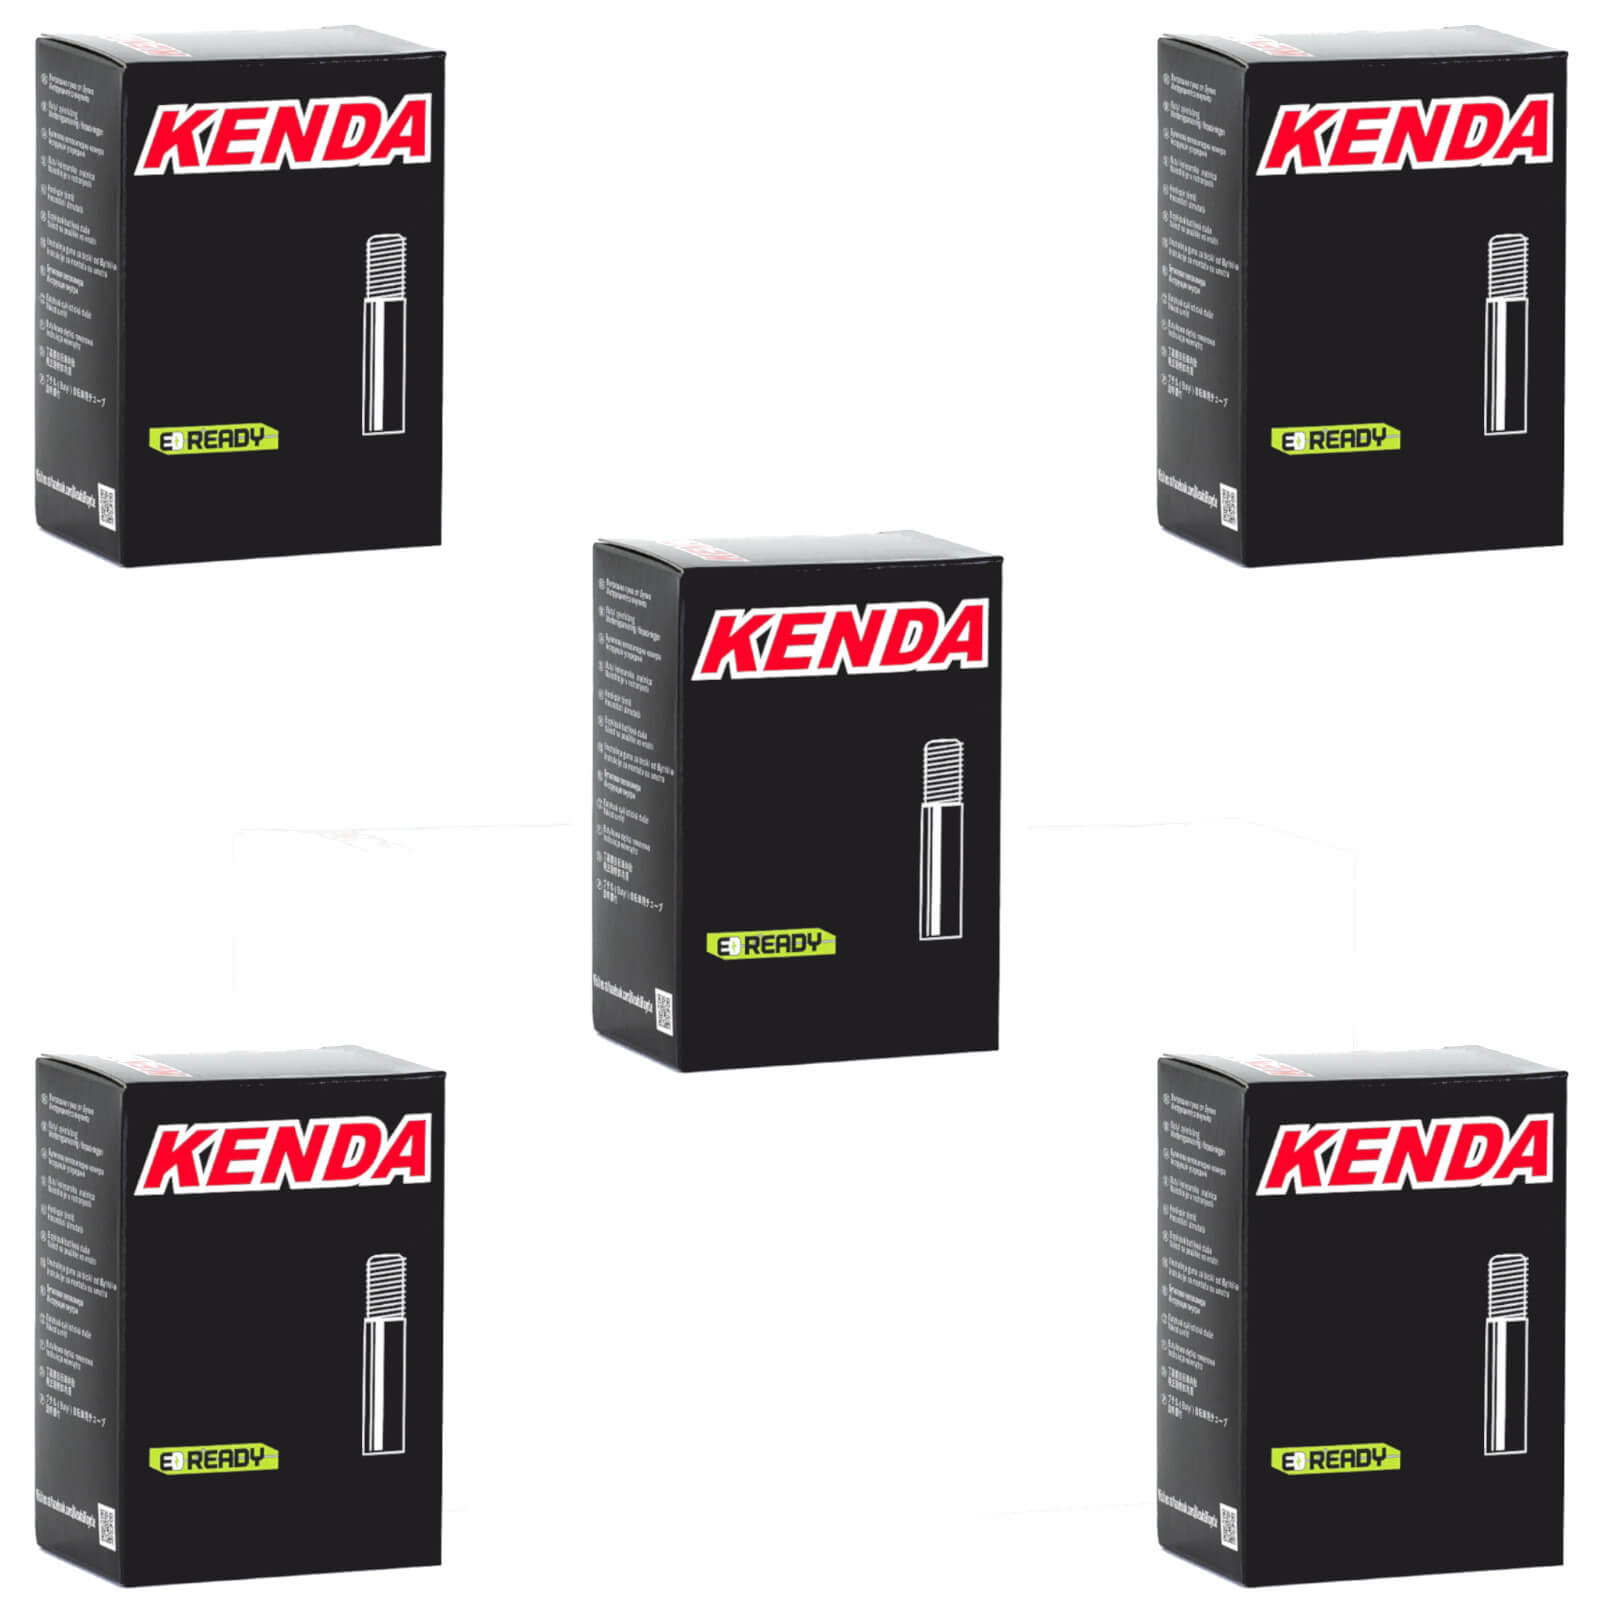 Kenda 26x1.5-1.75" 26 Inch Schrader Valve Bike Inner Tube Pack of 5